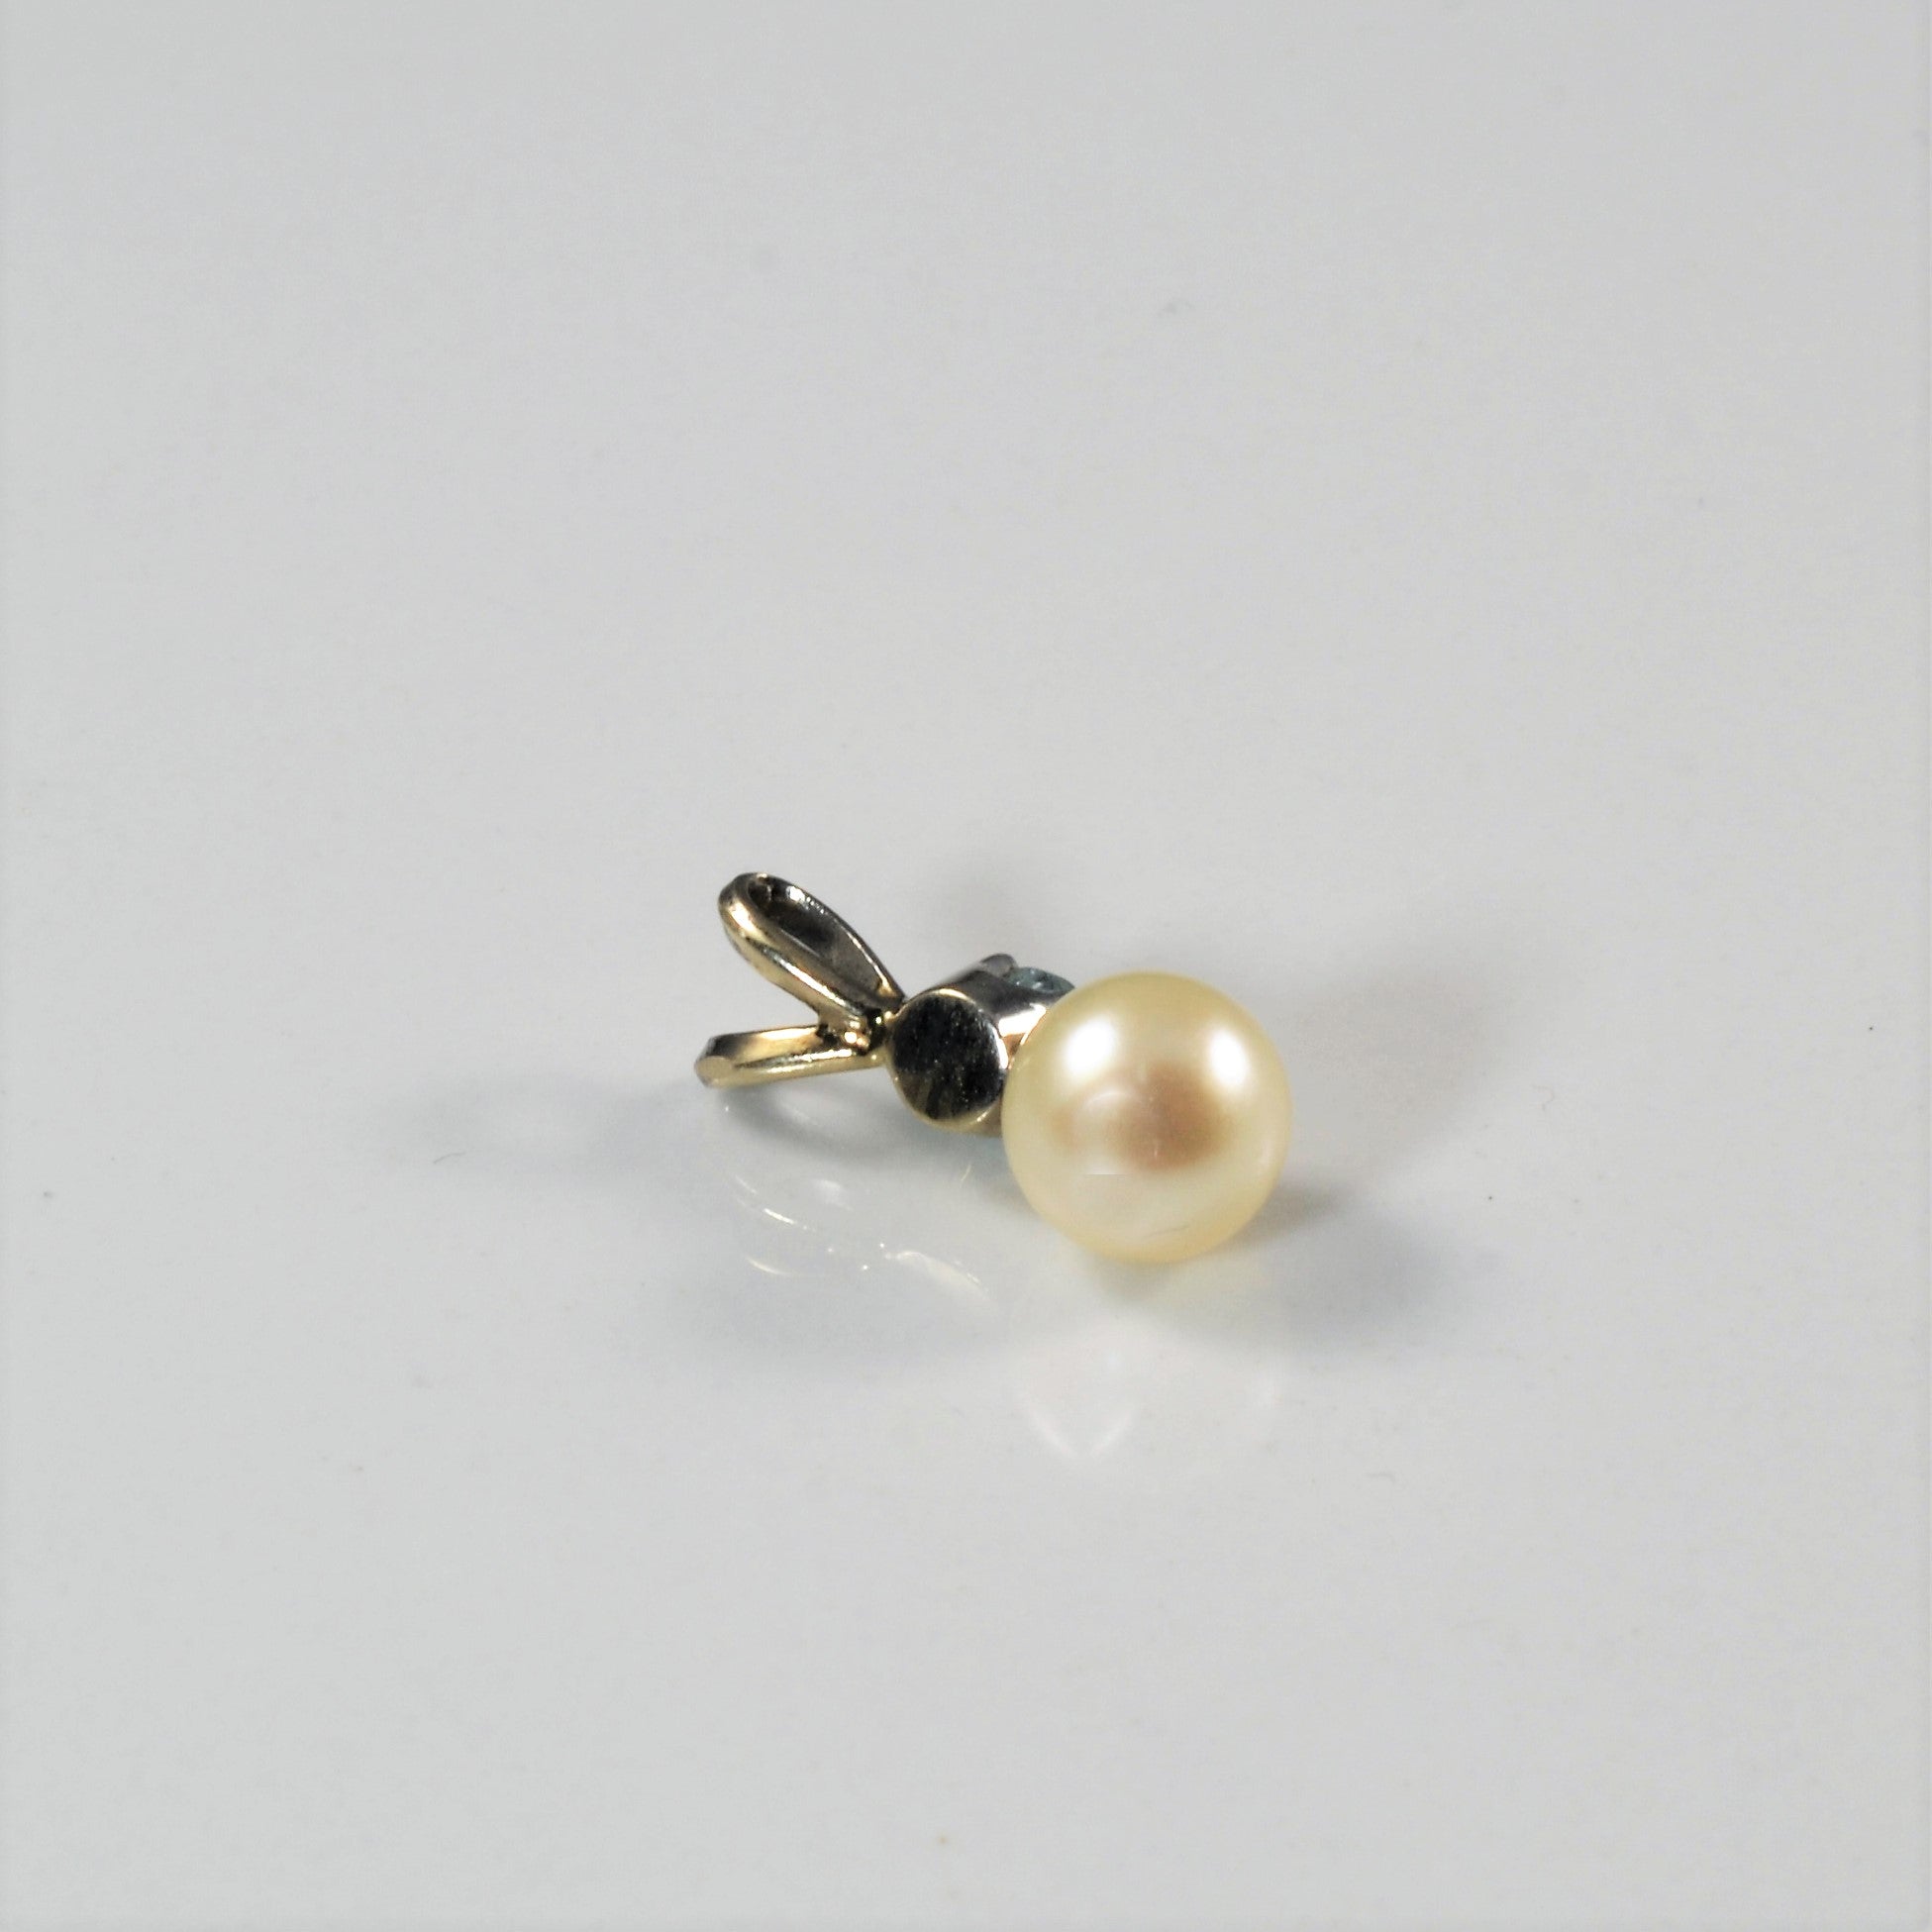 Pearl & Aquamarine Pendant | 0.18ct |